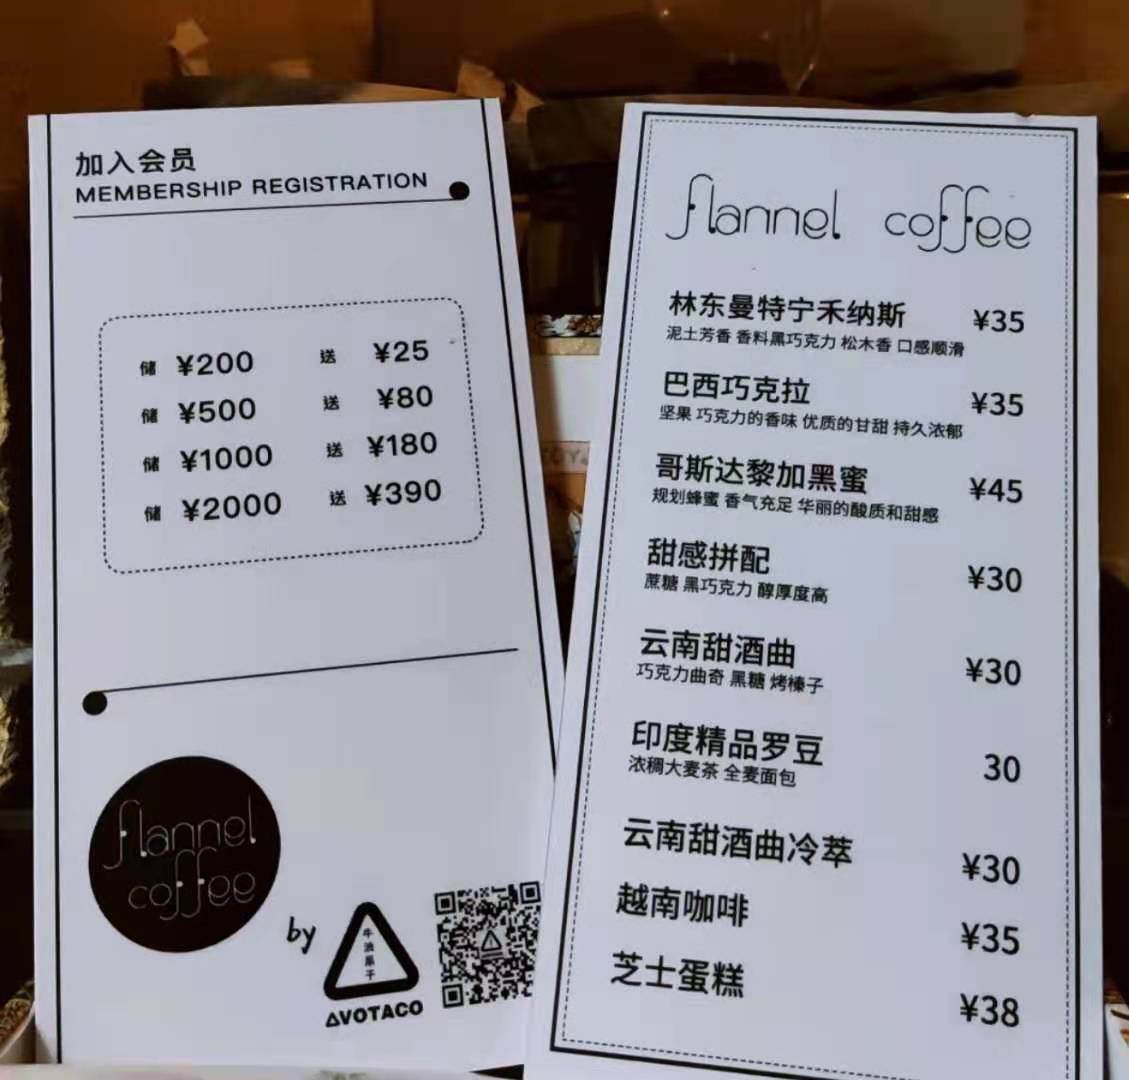 beijing-boyce-2021-flannel-coffee-pi-bar-avotaco-4